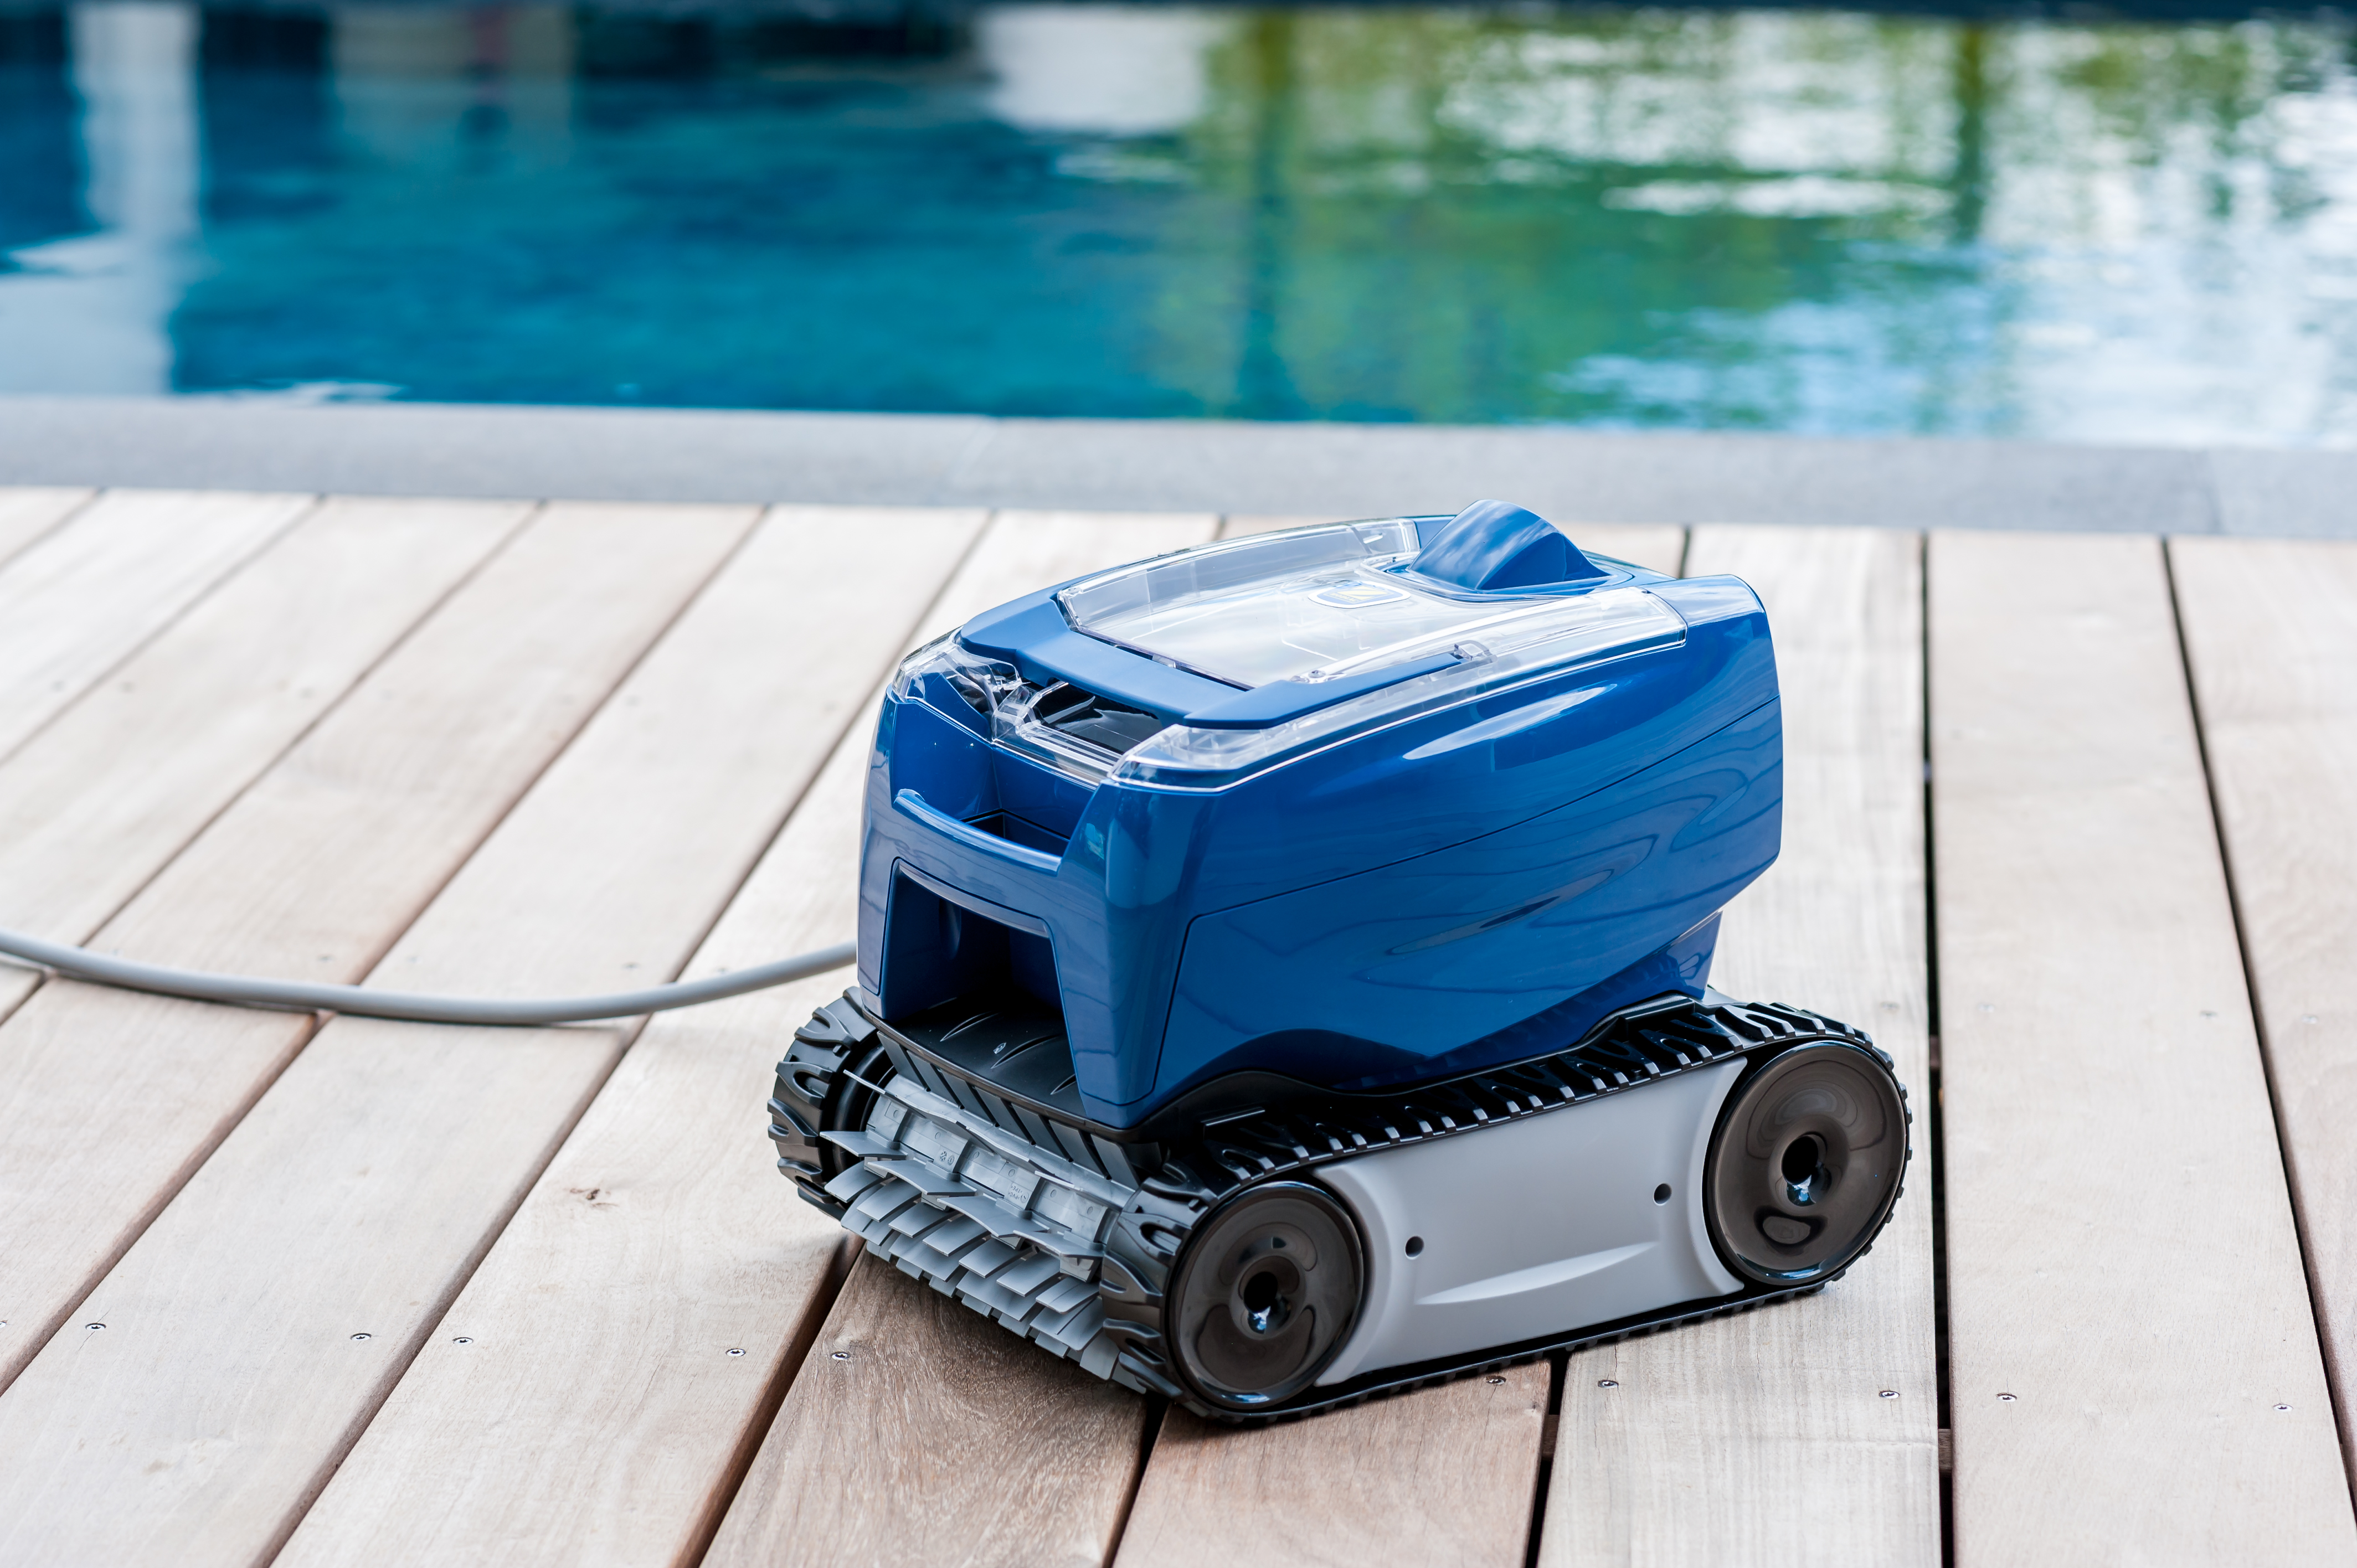 Robot de nettoyage pour mini piscine